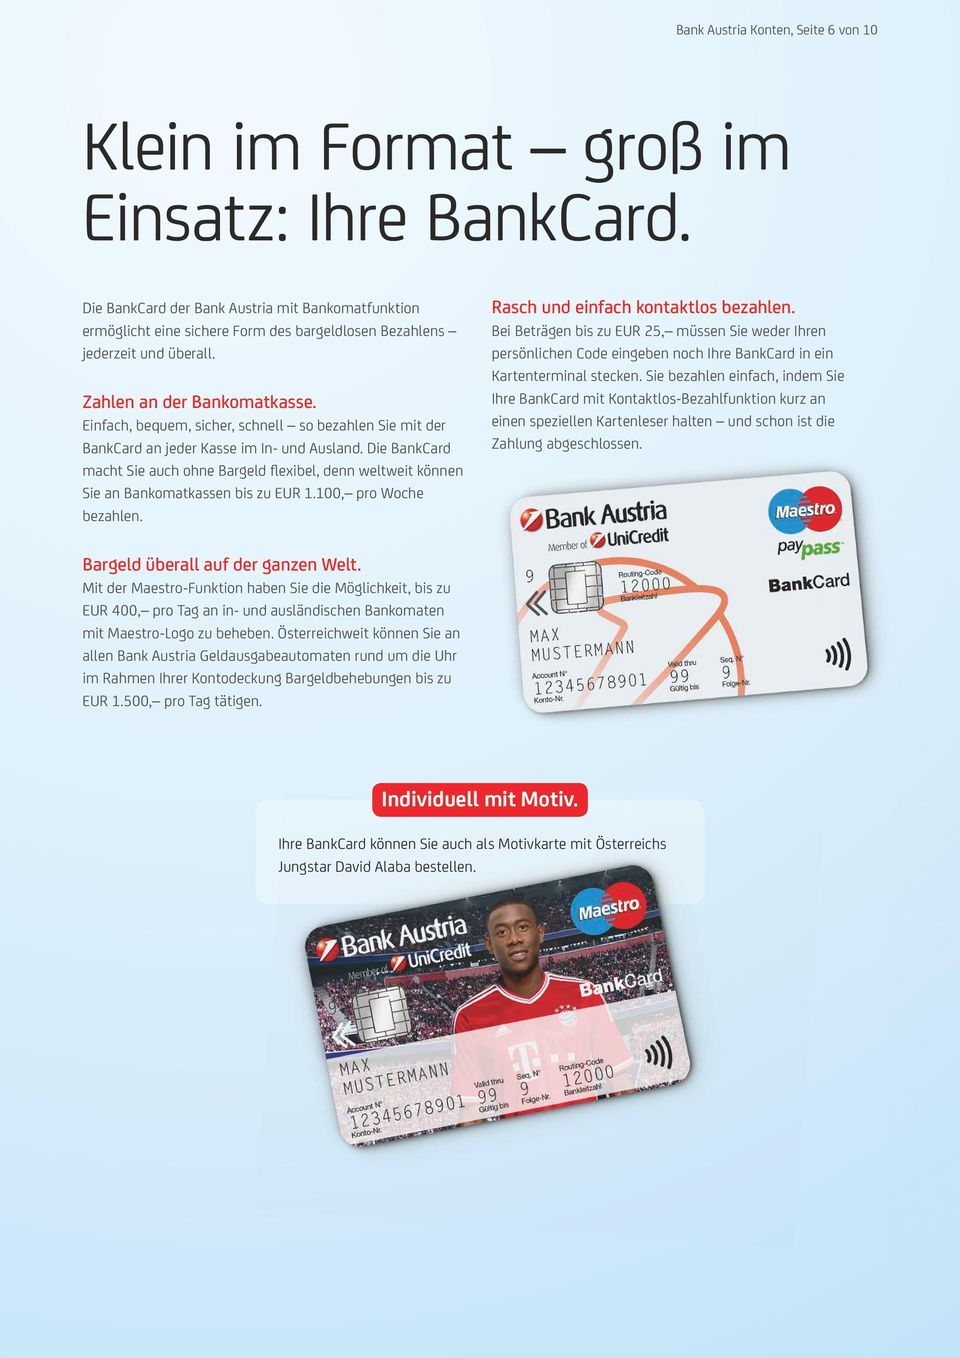 Einfach, bequem, sicher, schnell so bezahlen Sie mit der BankCard an jeder Kasse im In- und Ausland.